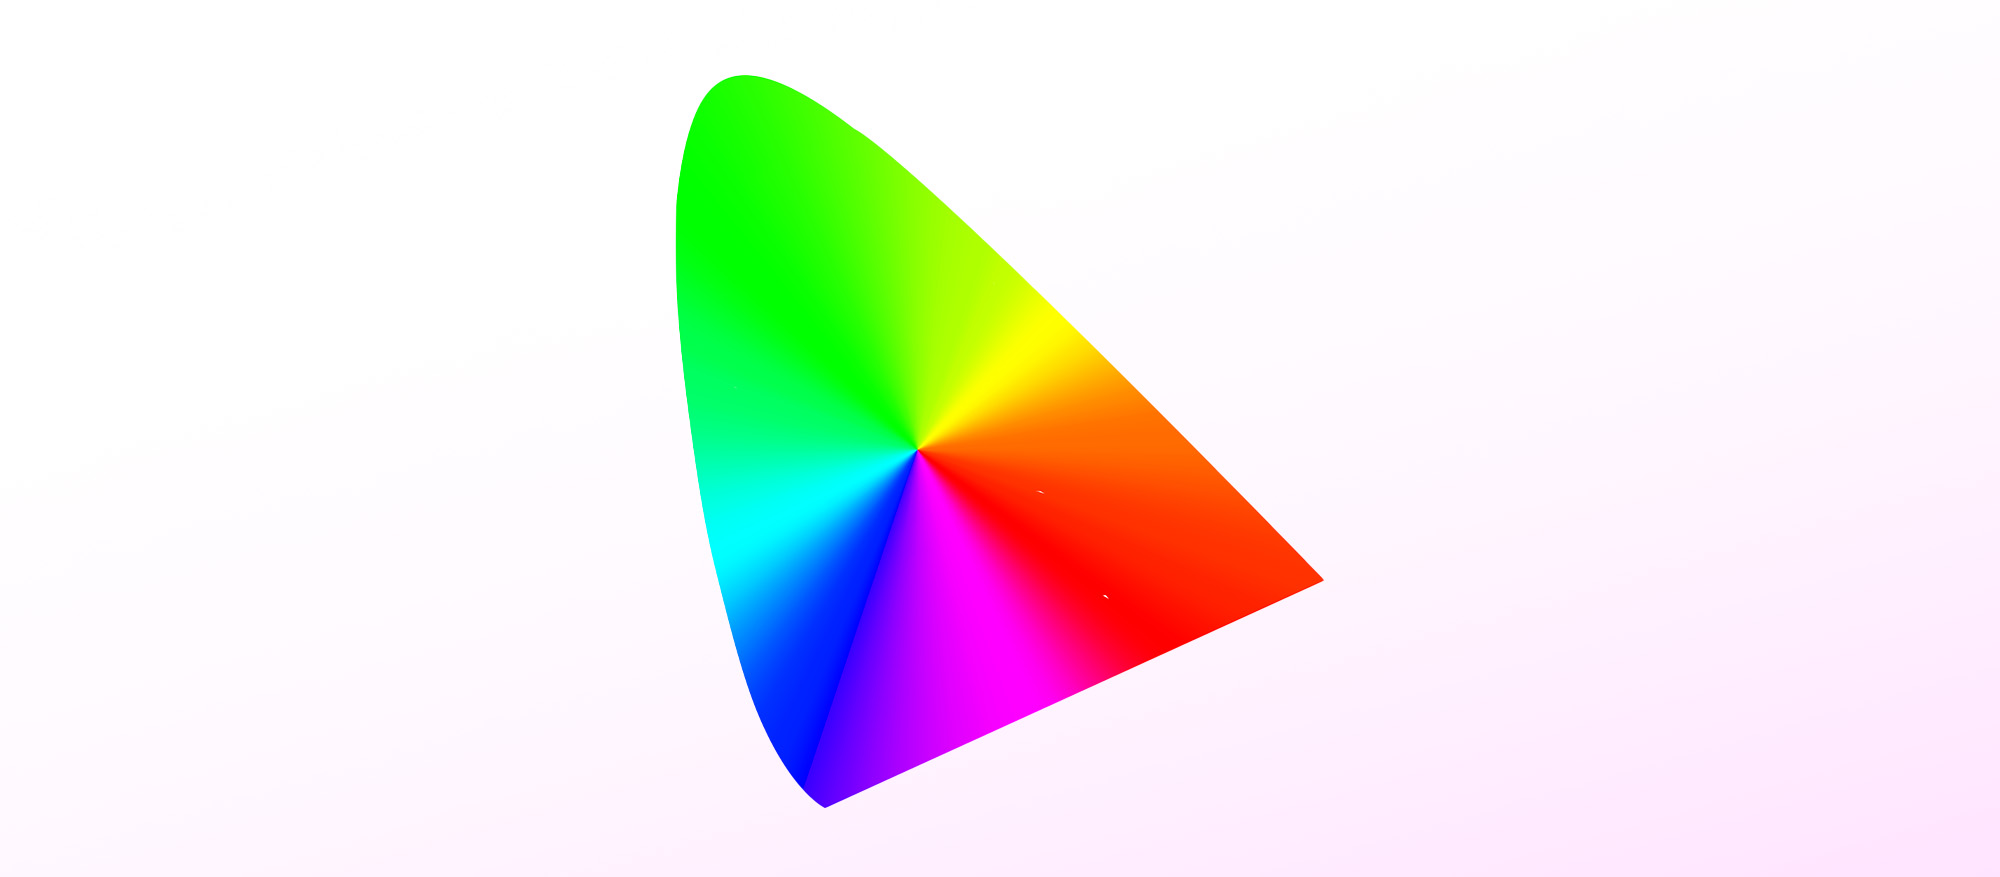 L'icona dei profili ICC si basa sul diagramma di cromaticità standard CIE e serve come punto di proiezione per gli spazi colore RGB.